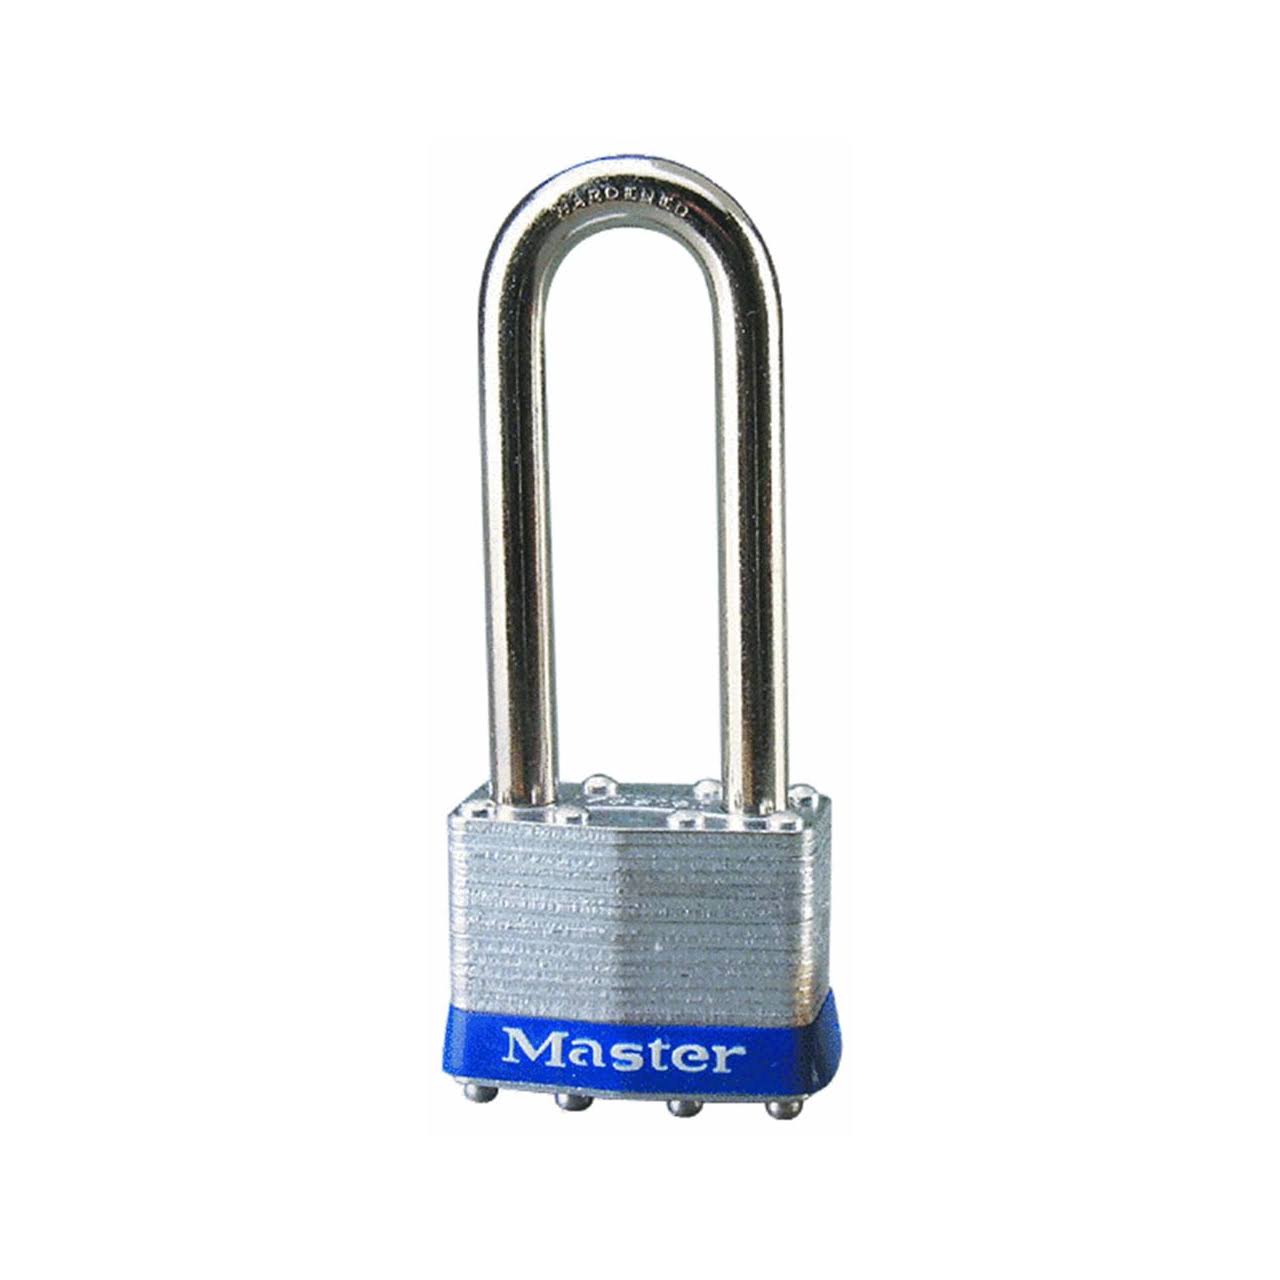 Master Lock Universal Pin Padlock - 1 3/4"